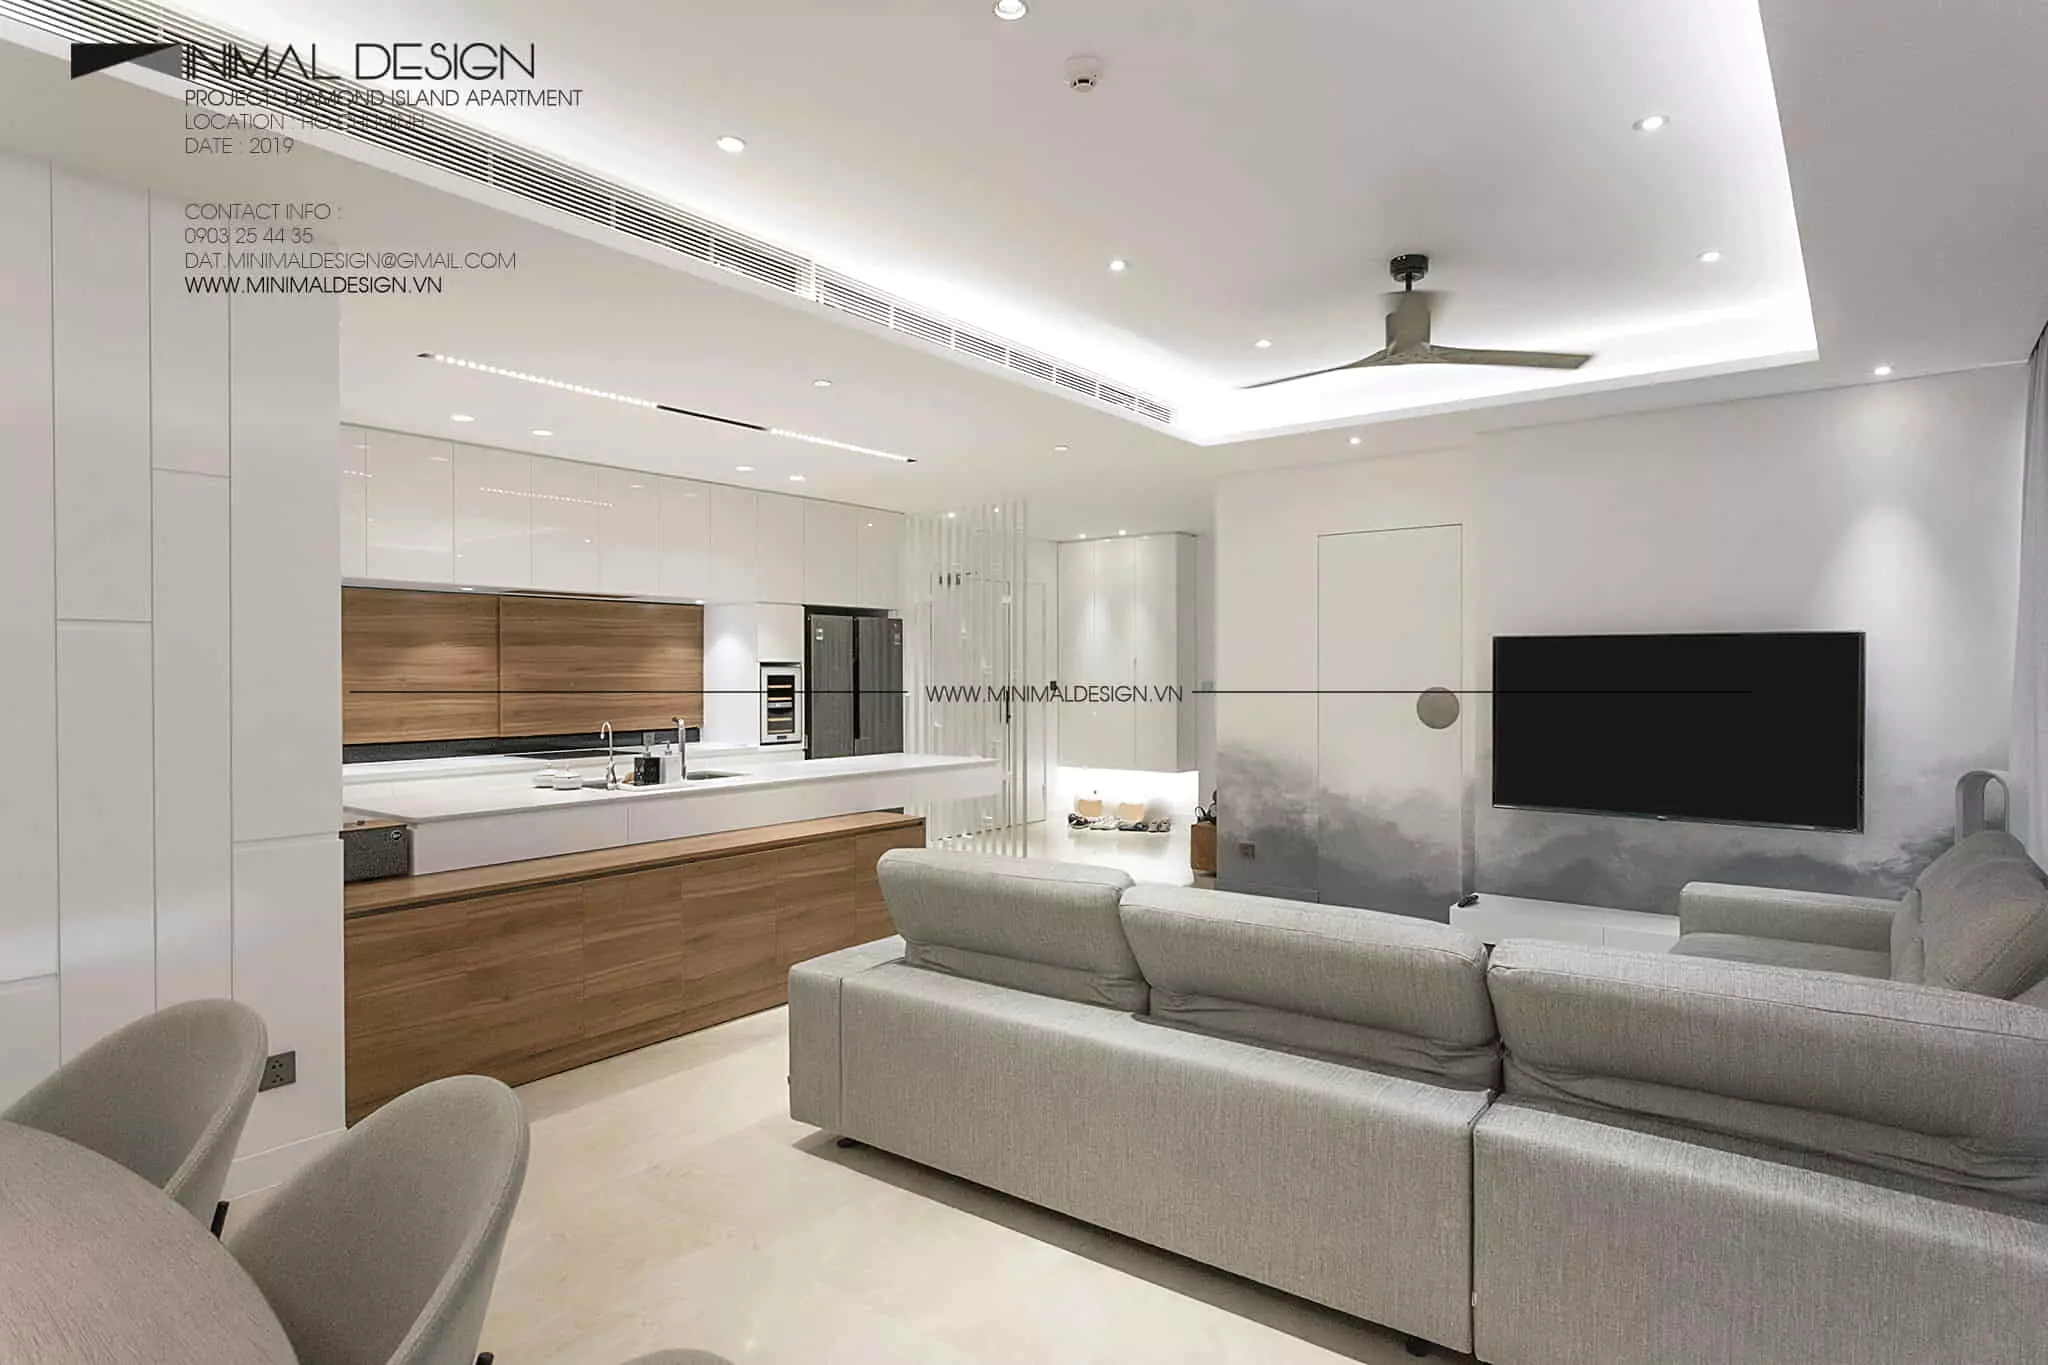 Thiết kế nội thất căn hộ đẹp, đủ công năng và đặc biệt là thể hiện được cá tính riêng của gia chủ là cách mà kiến trúc sư hướng đến trong mỗi dự án.